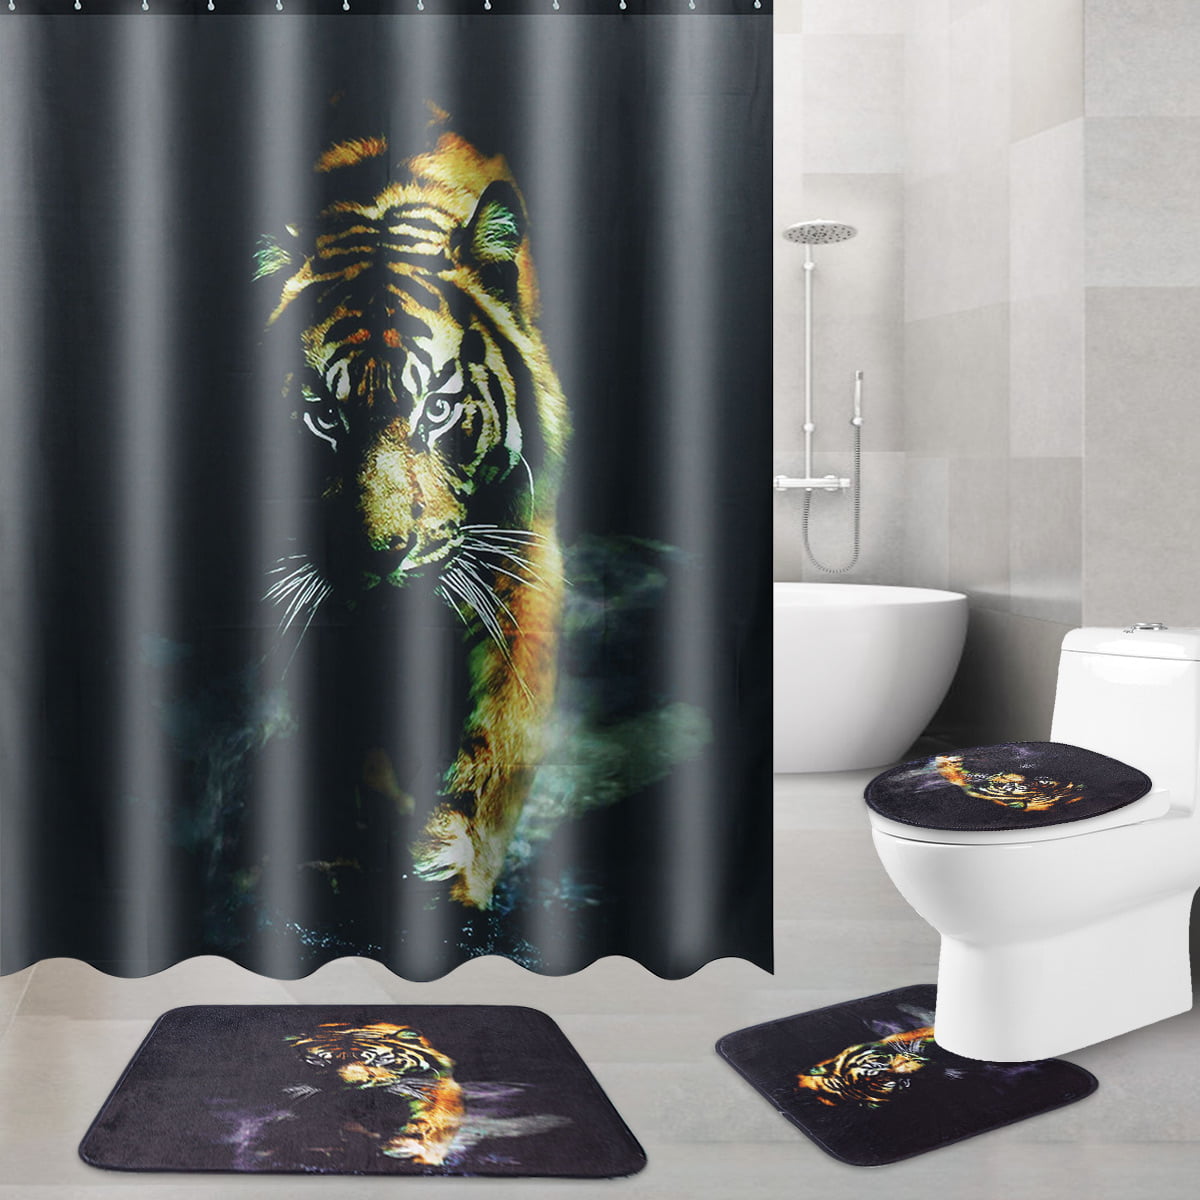 Starry Sky Lion Head Bath Mat Toilet Cover Rugs Shower Curtain Bathroom Decor 